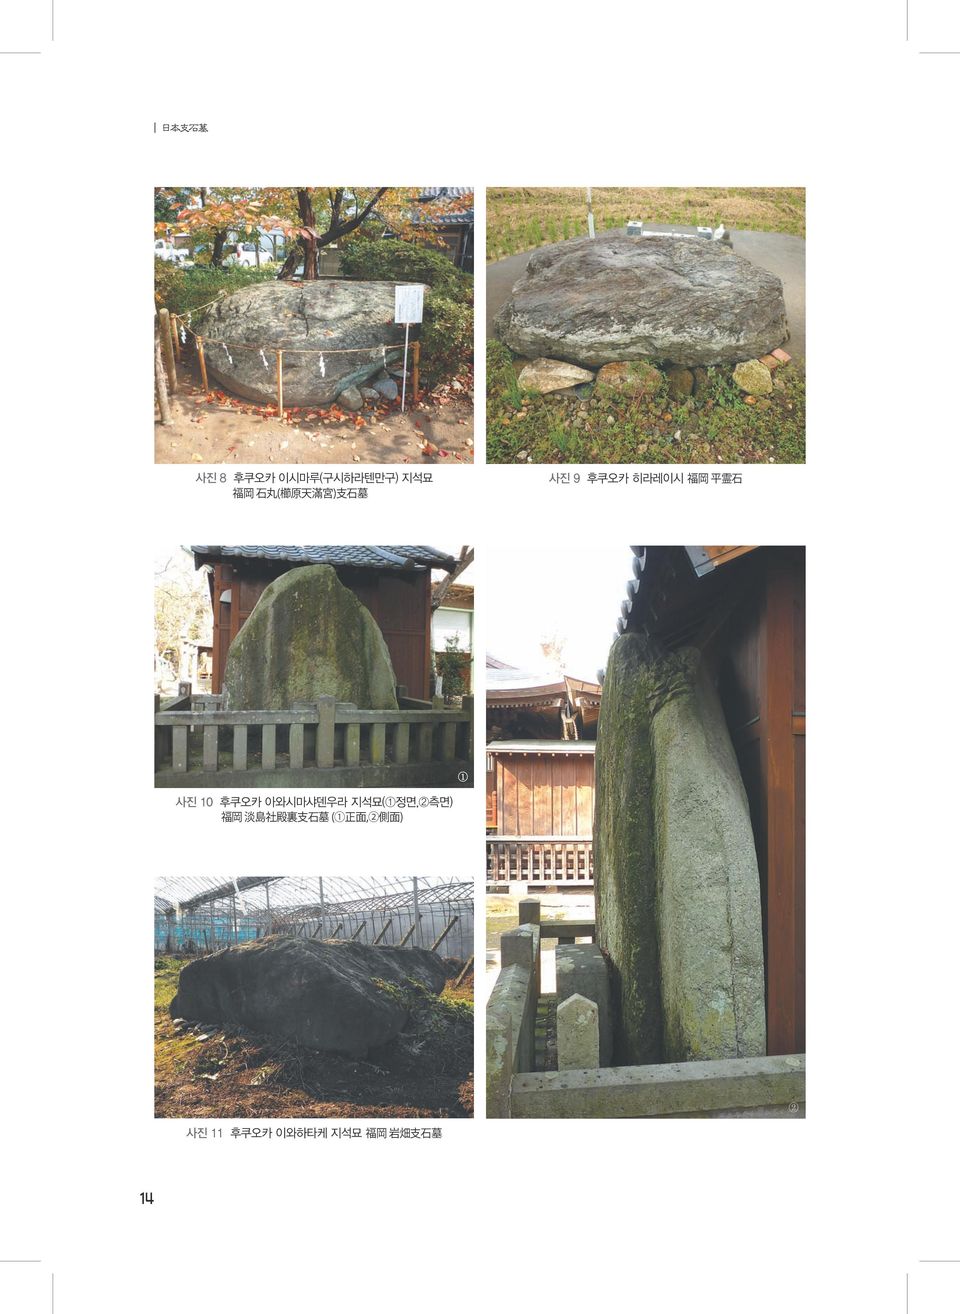 후쿠오카 아와시마샤덴우라 지석묘(1정면,2측면) 福 岡 淡 島 社 殿 裏 支 石 墓 (1